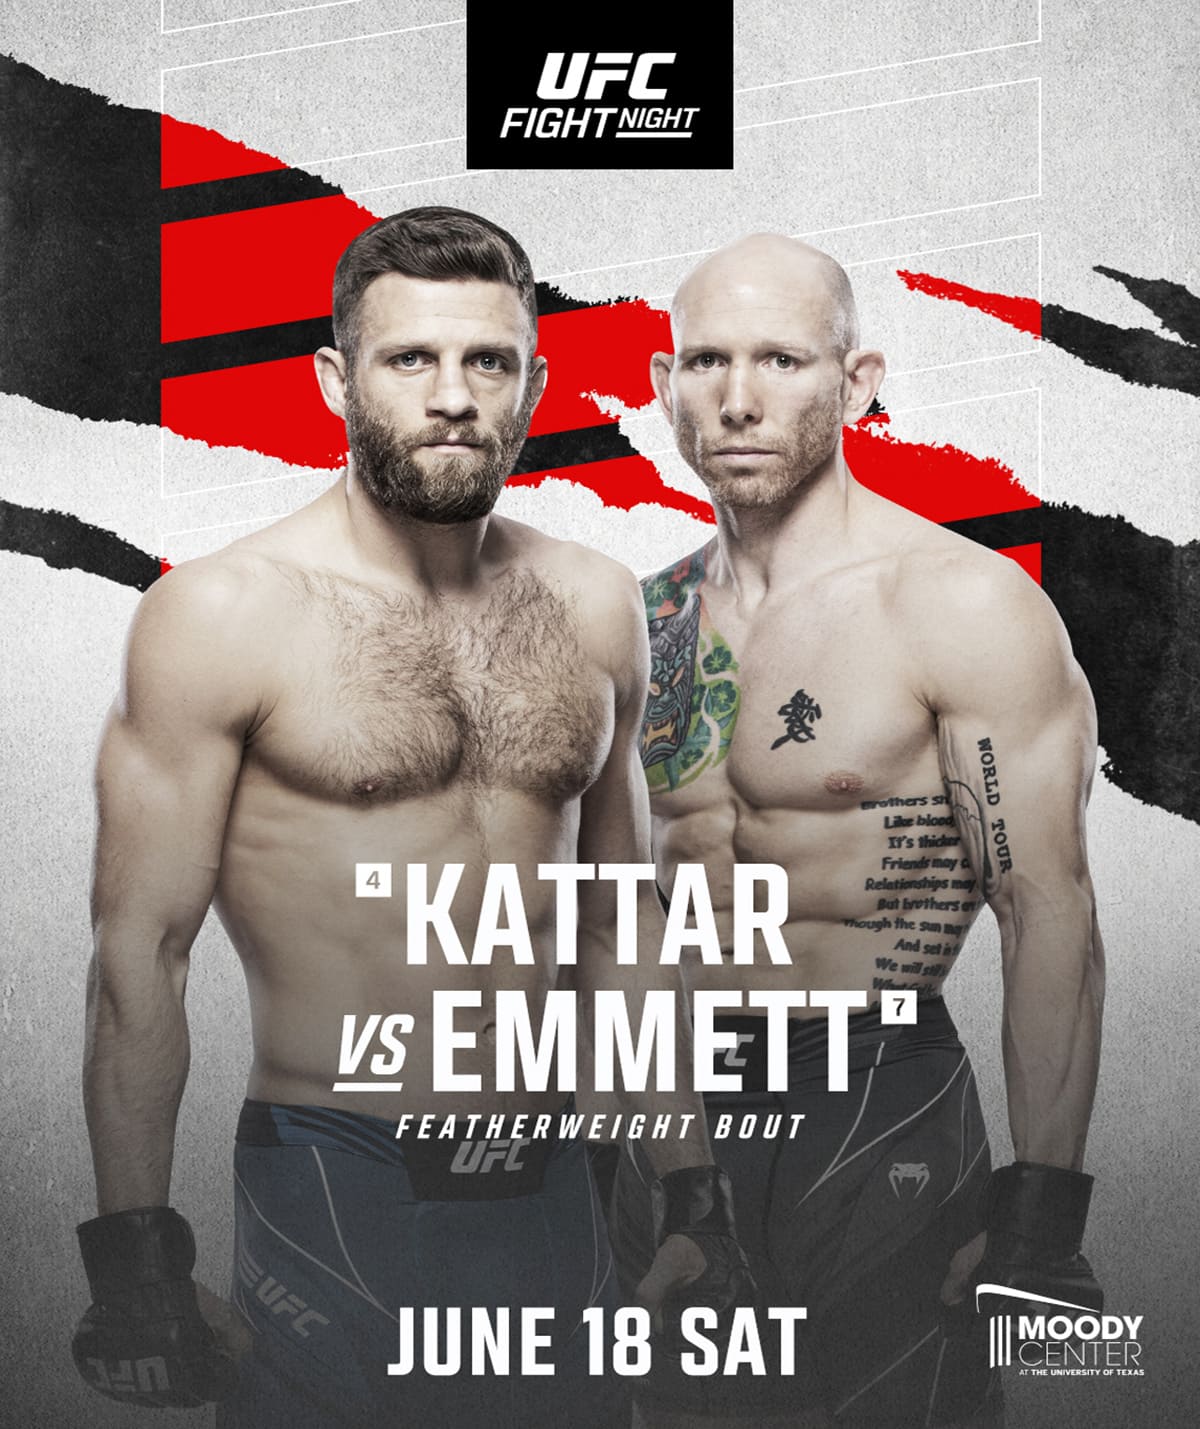 UFC on ESPN 37: Каттар - Эмметт дата проведения, кард, участники и результаты